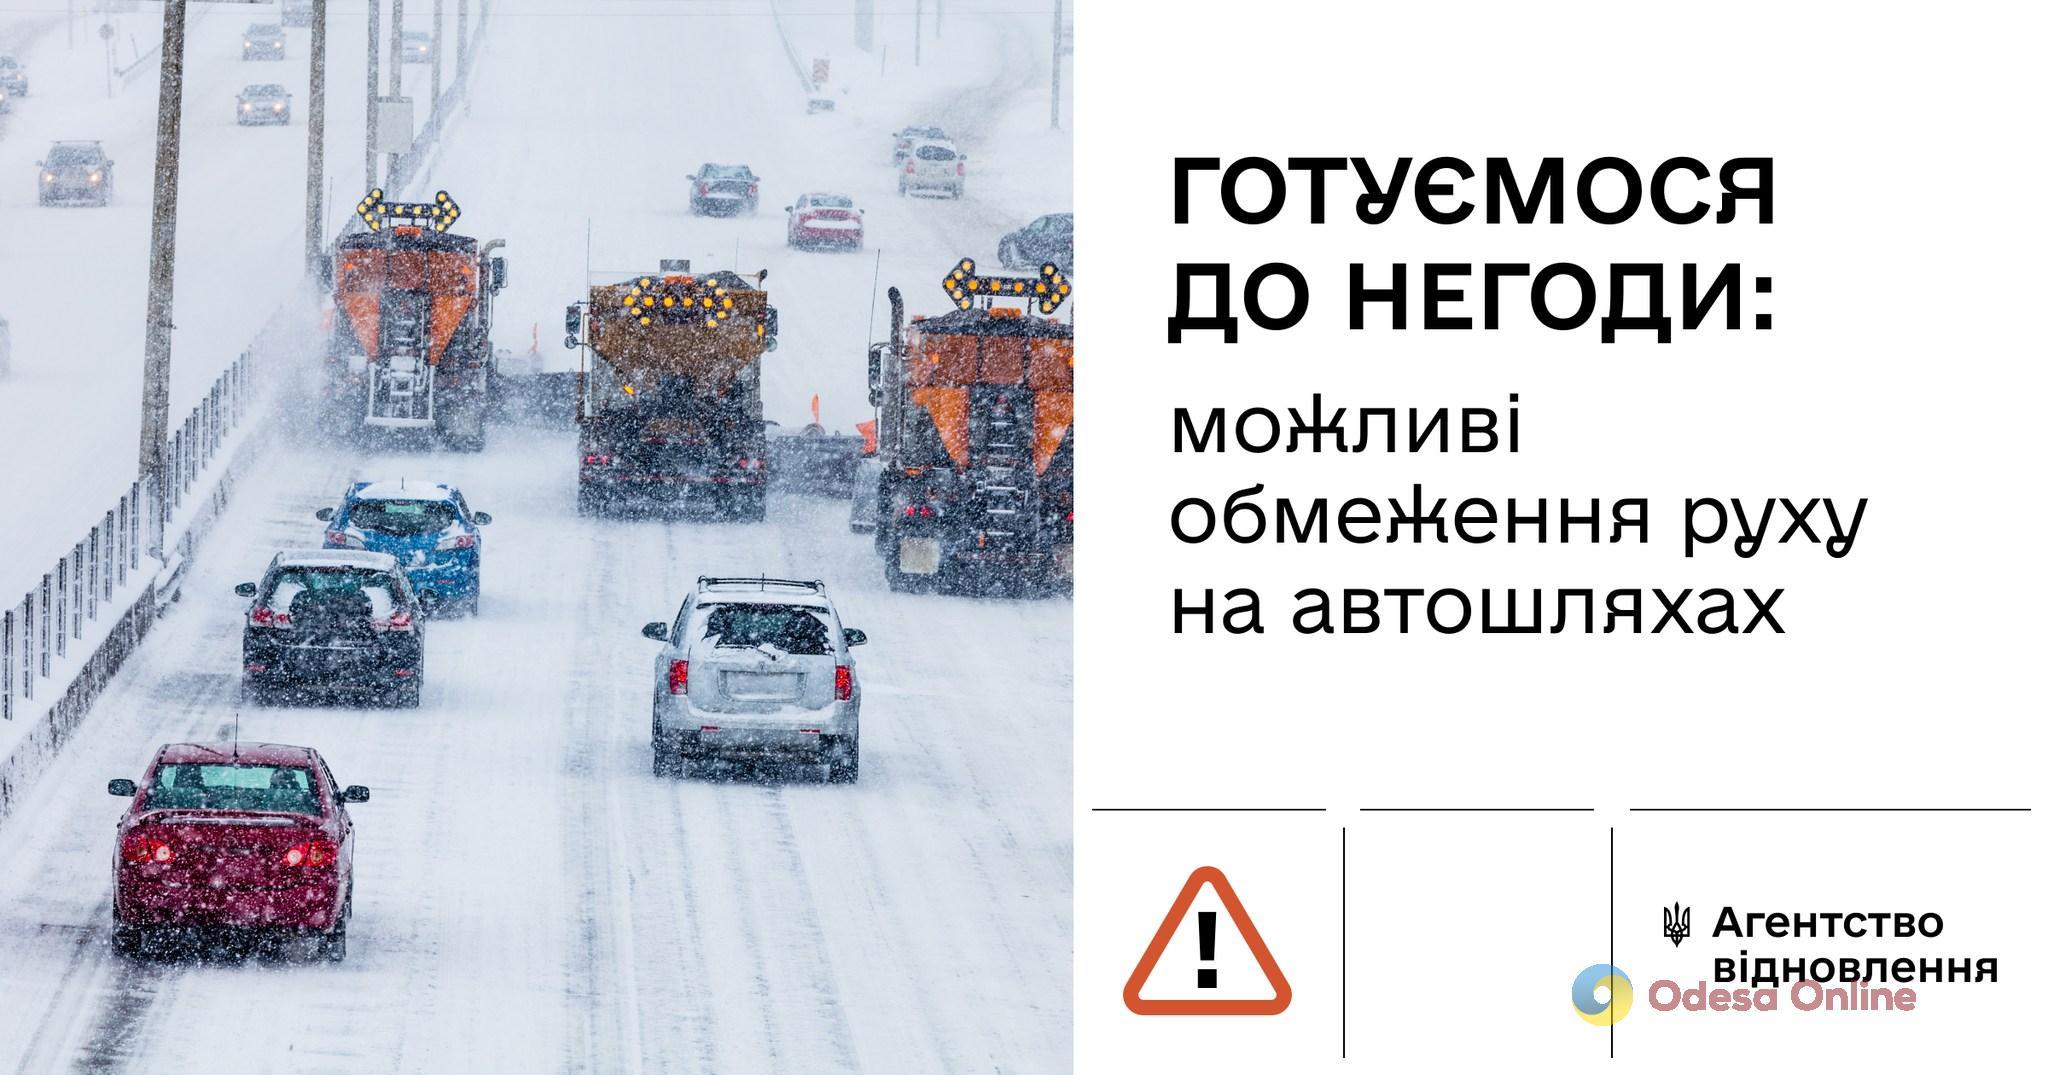 Жителів Одещини попереджають про можливе обмеження руху на дорогах через негоду